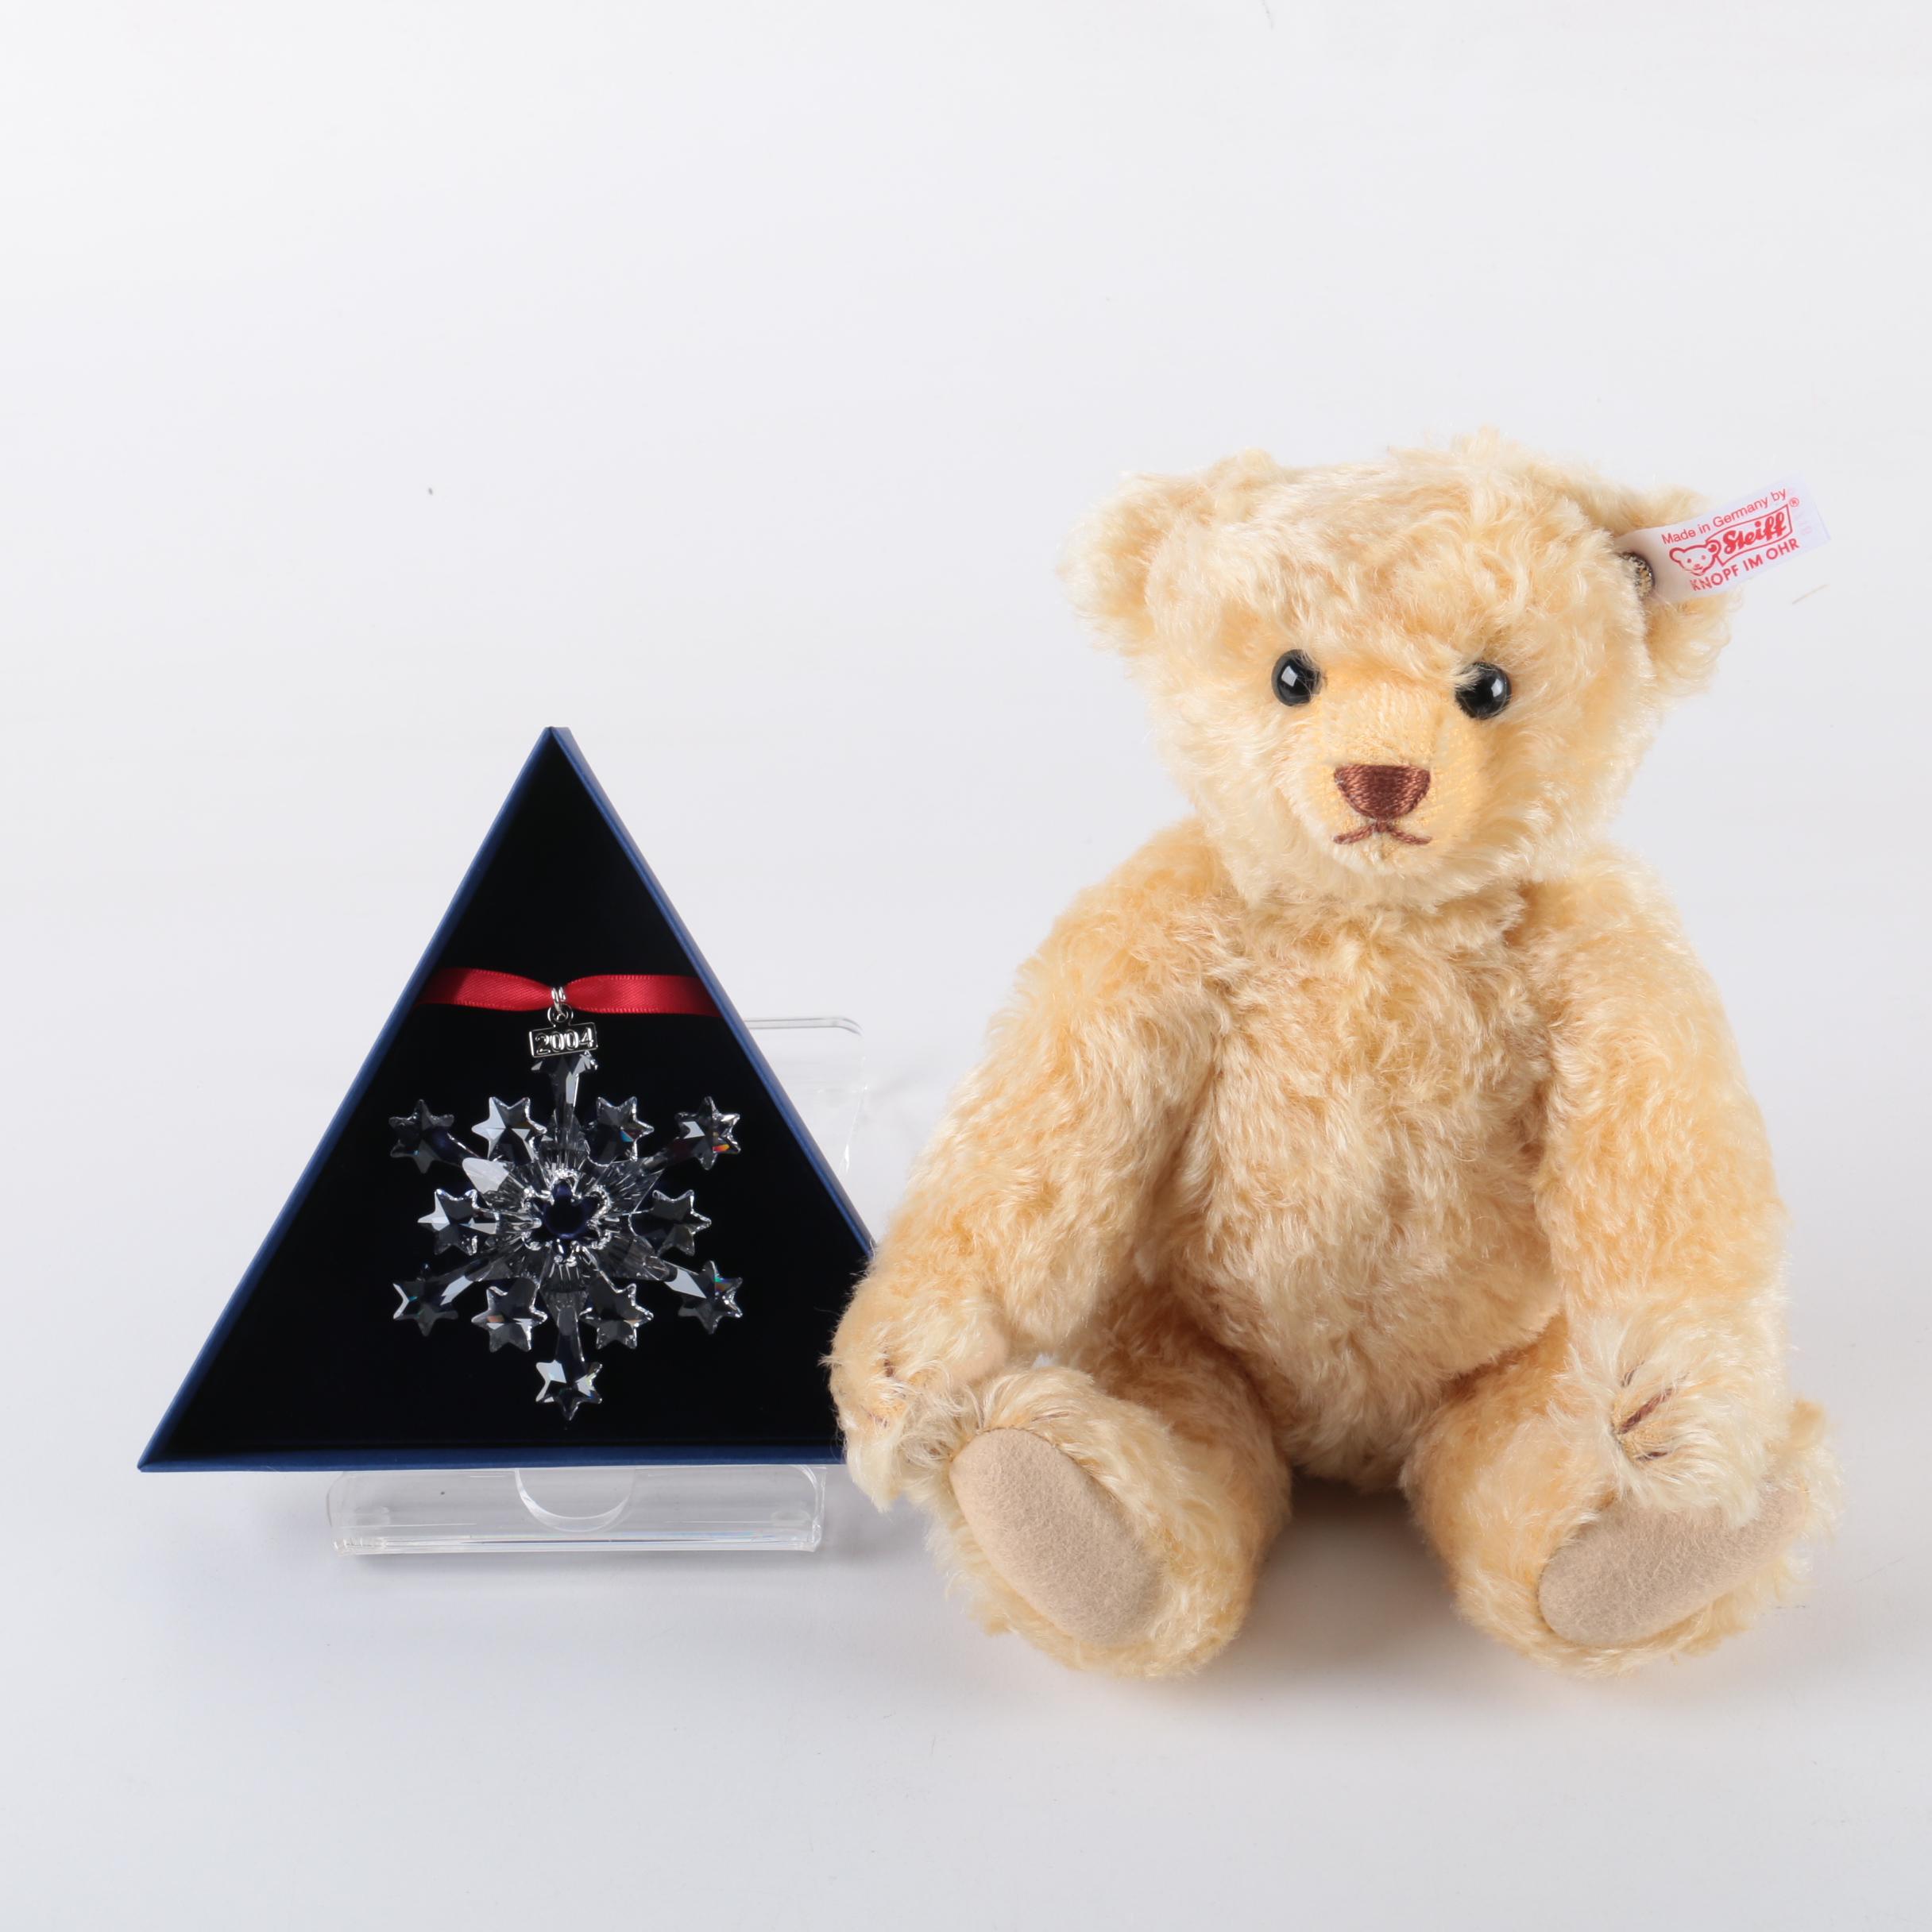 swarovski teddy bear ornament